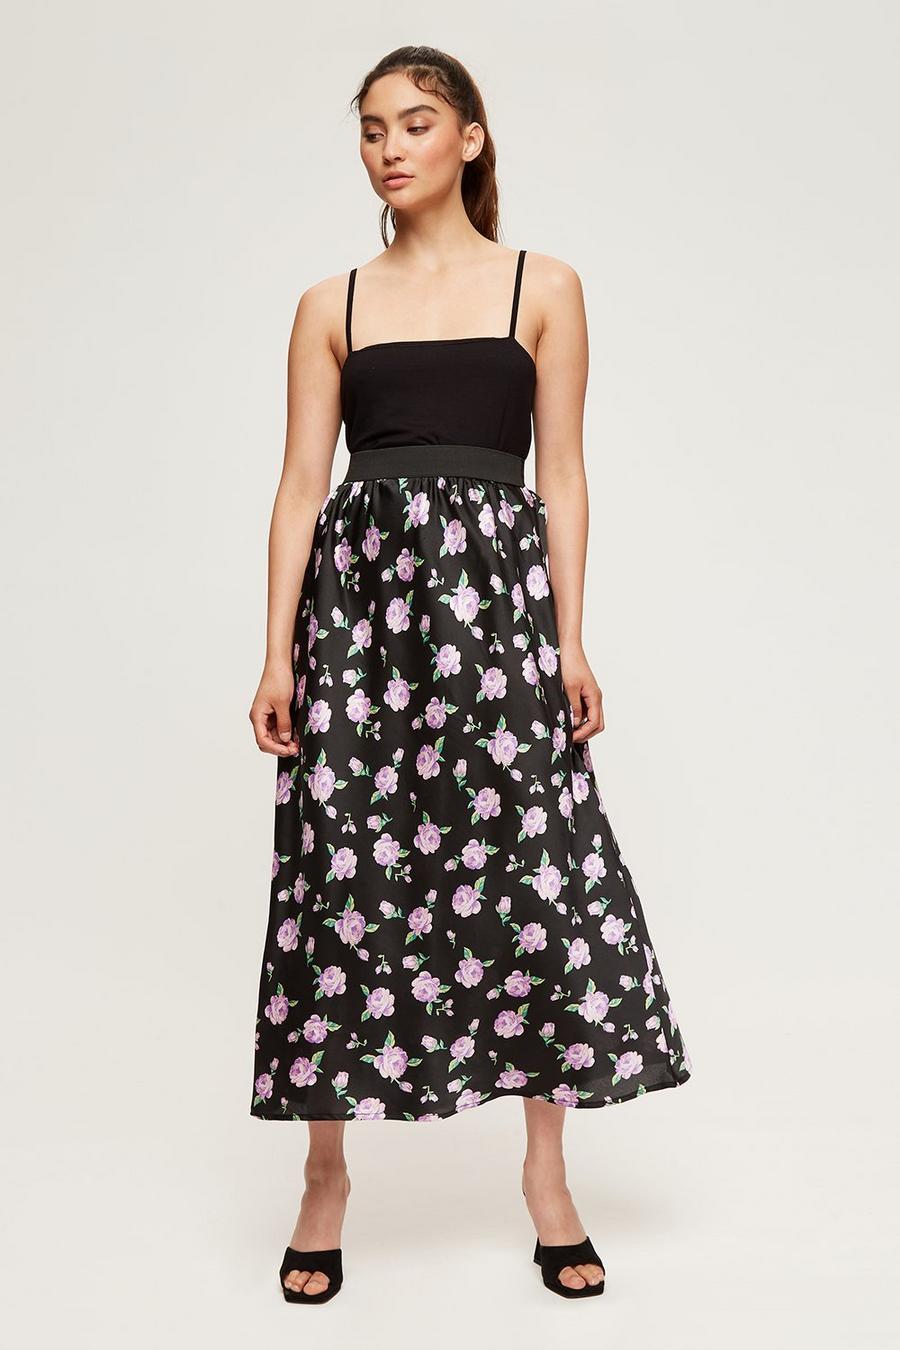 Petite Pink Rose Print Bias Cut Midi Skirt